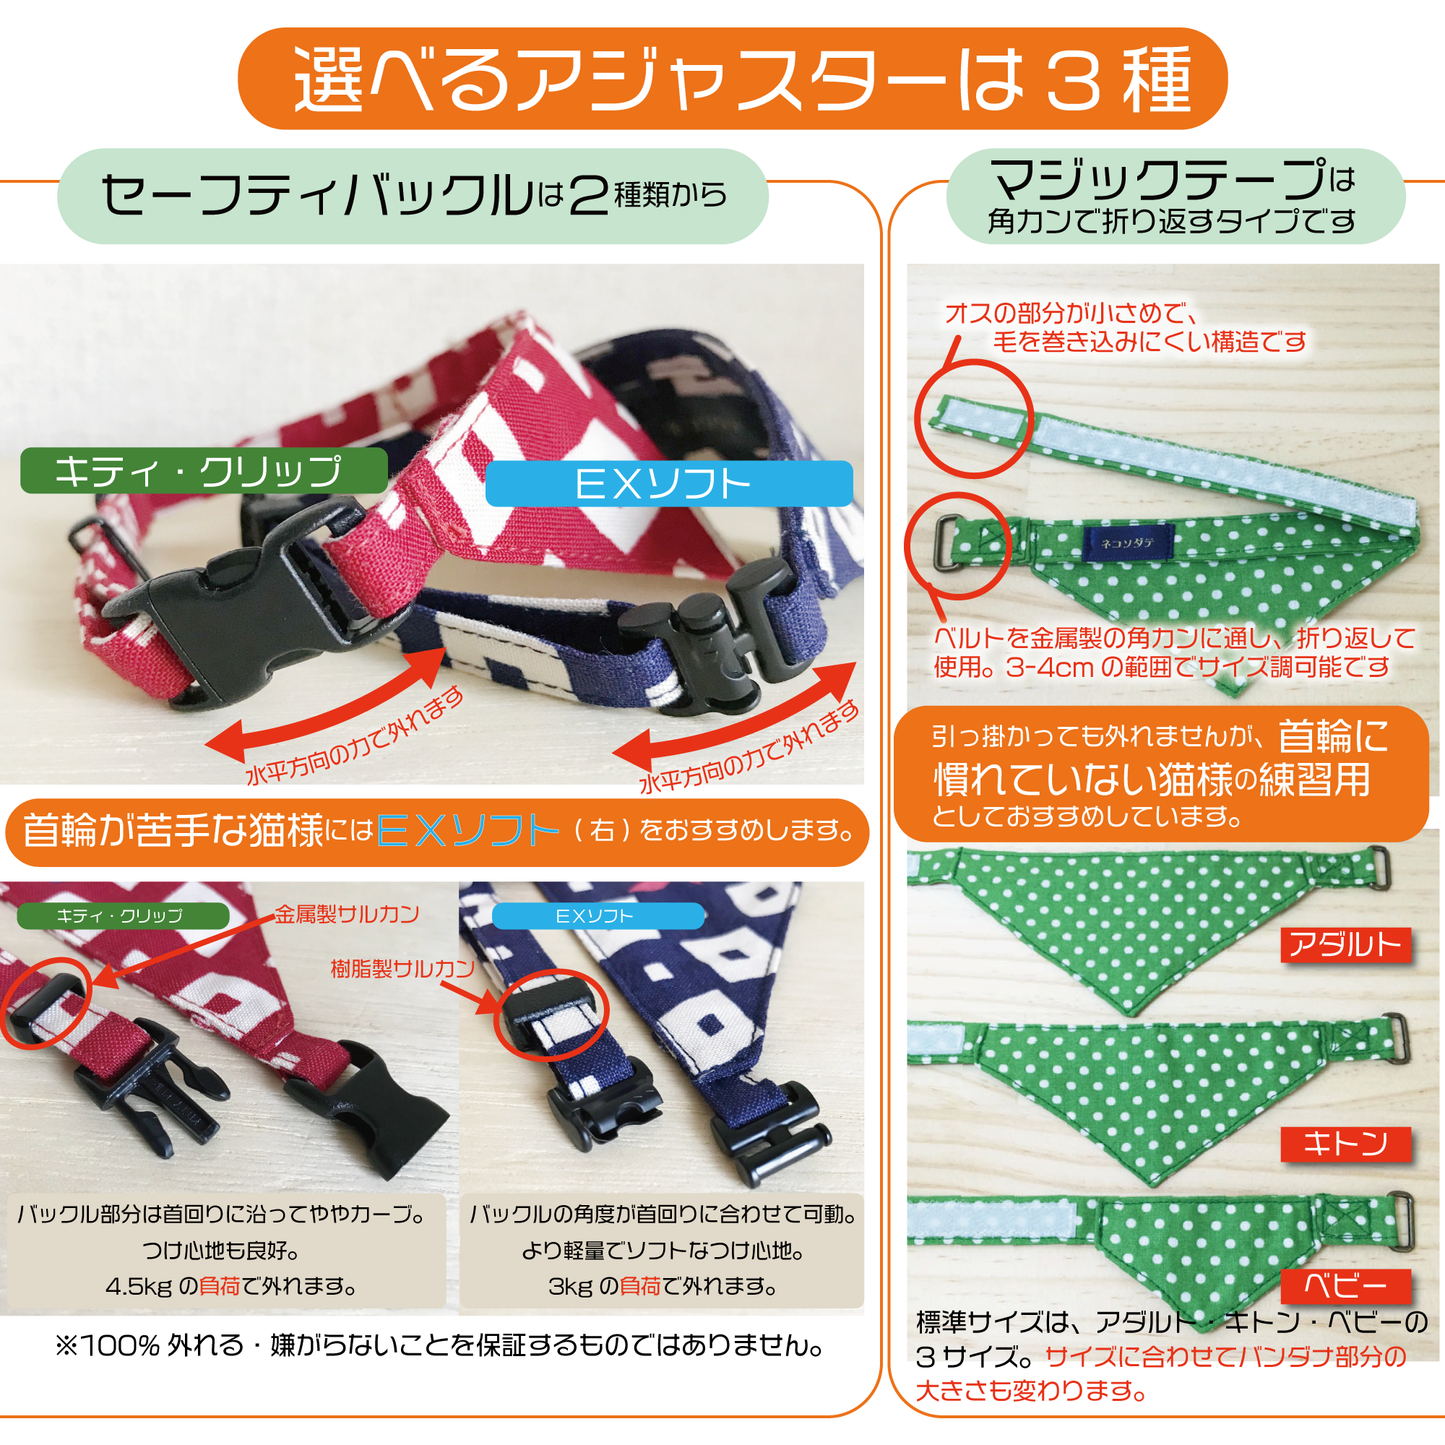 [Sakura pattern pink] Serious collar, conspicuous bandana style / selectable adjuster cat collar